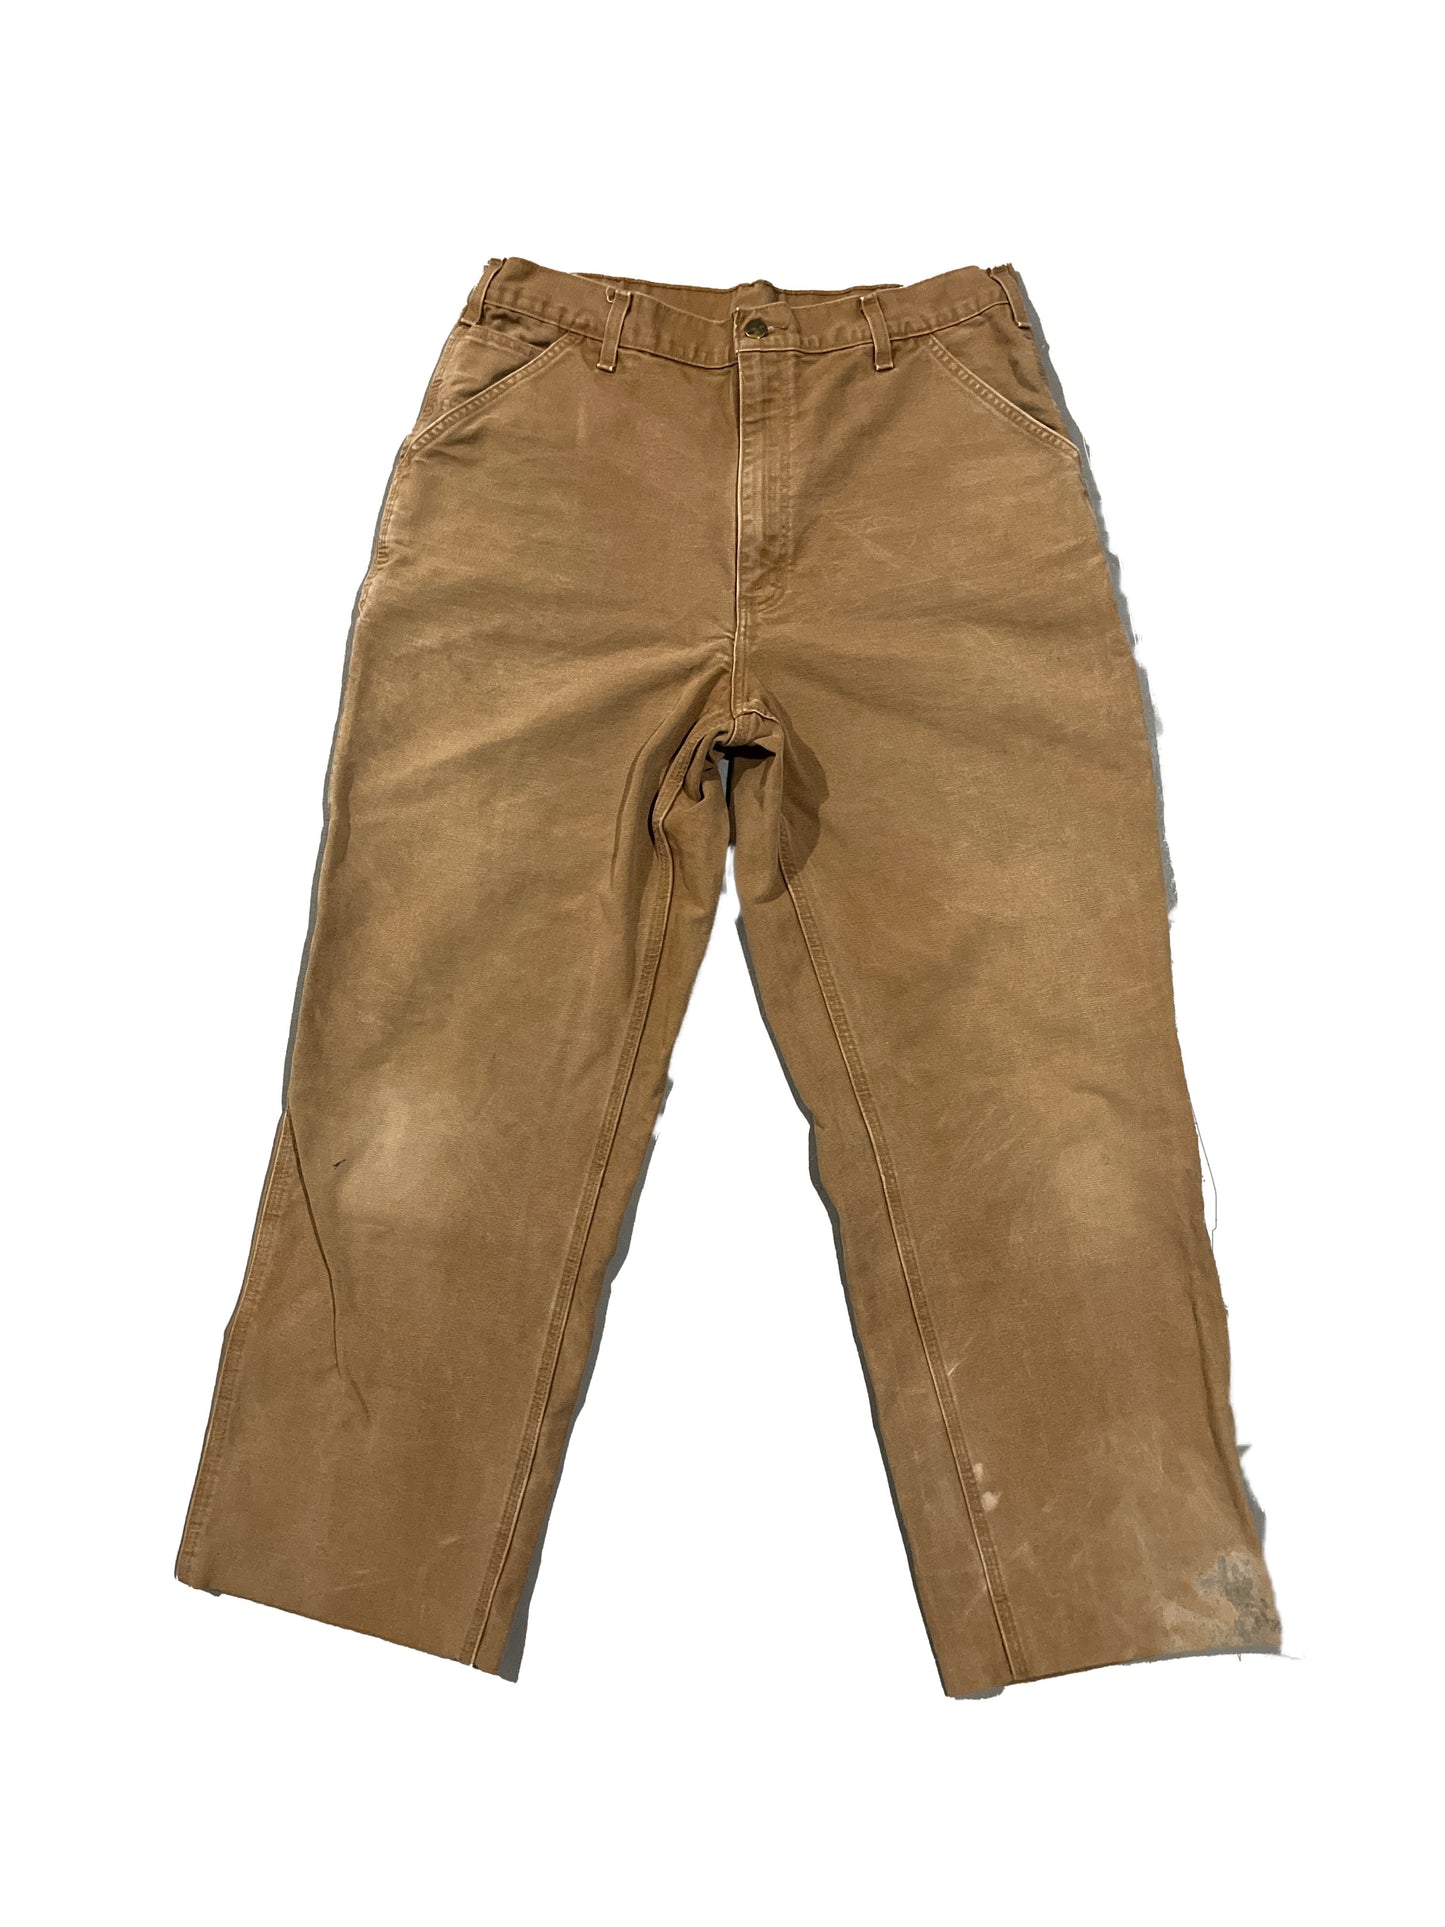 Vintage Carhartt Pants Beige